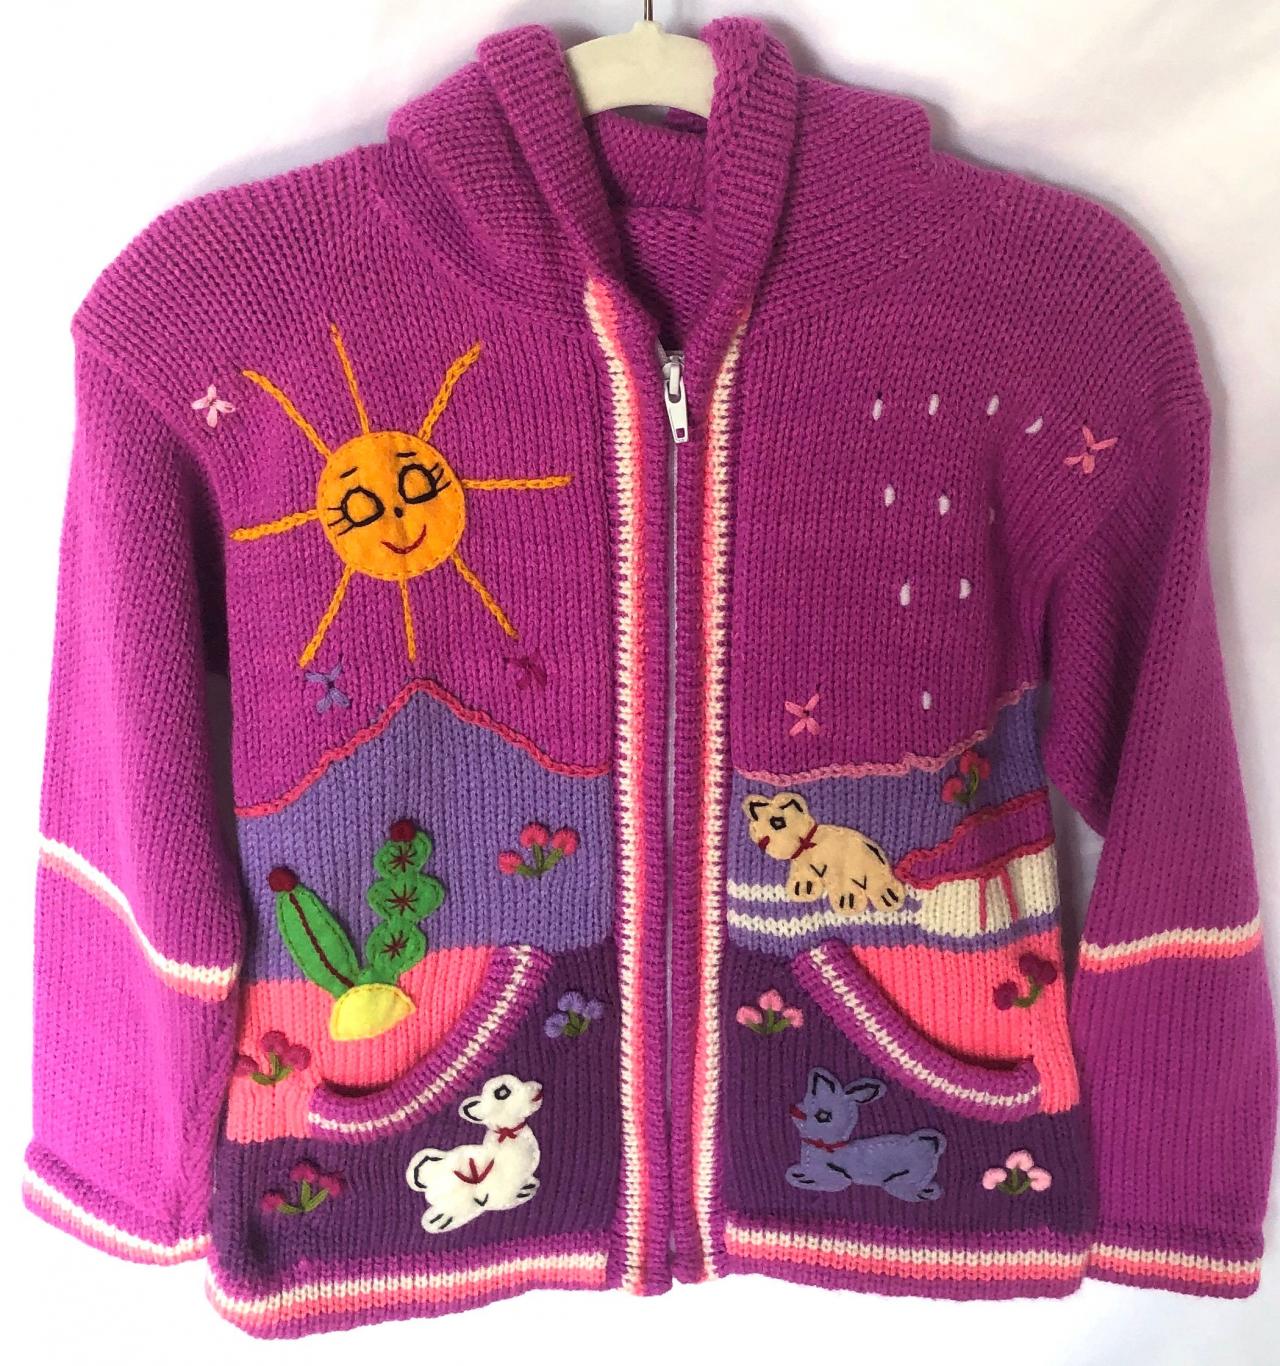 Size 6 Lilac Hooded Jacket, Girls Jacket, Winter Jacket, Zipper Jacket, Knitwear Jacket, Kids Jacket, Wool Sheep Jacket, Long Sleeve